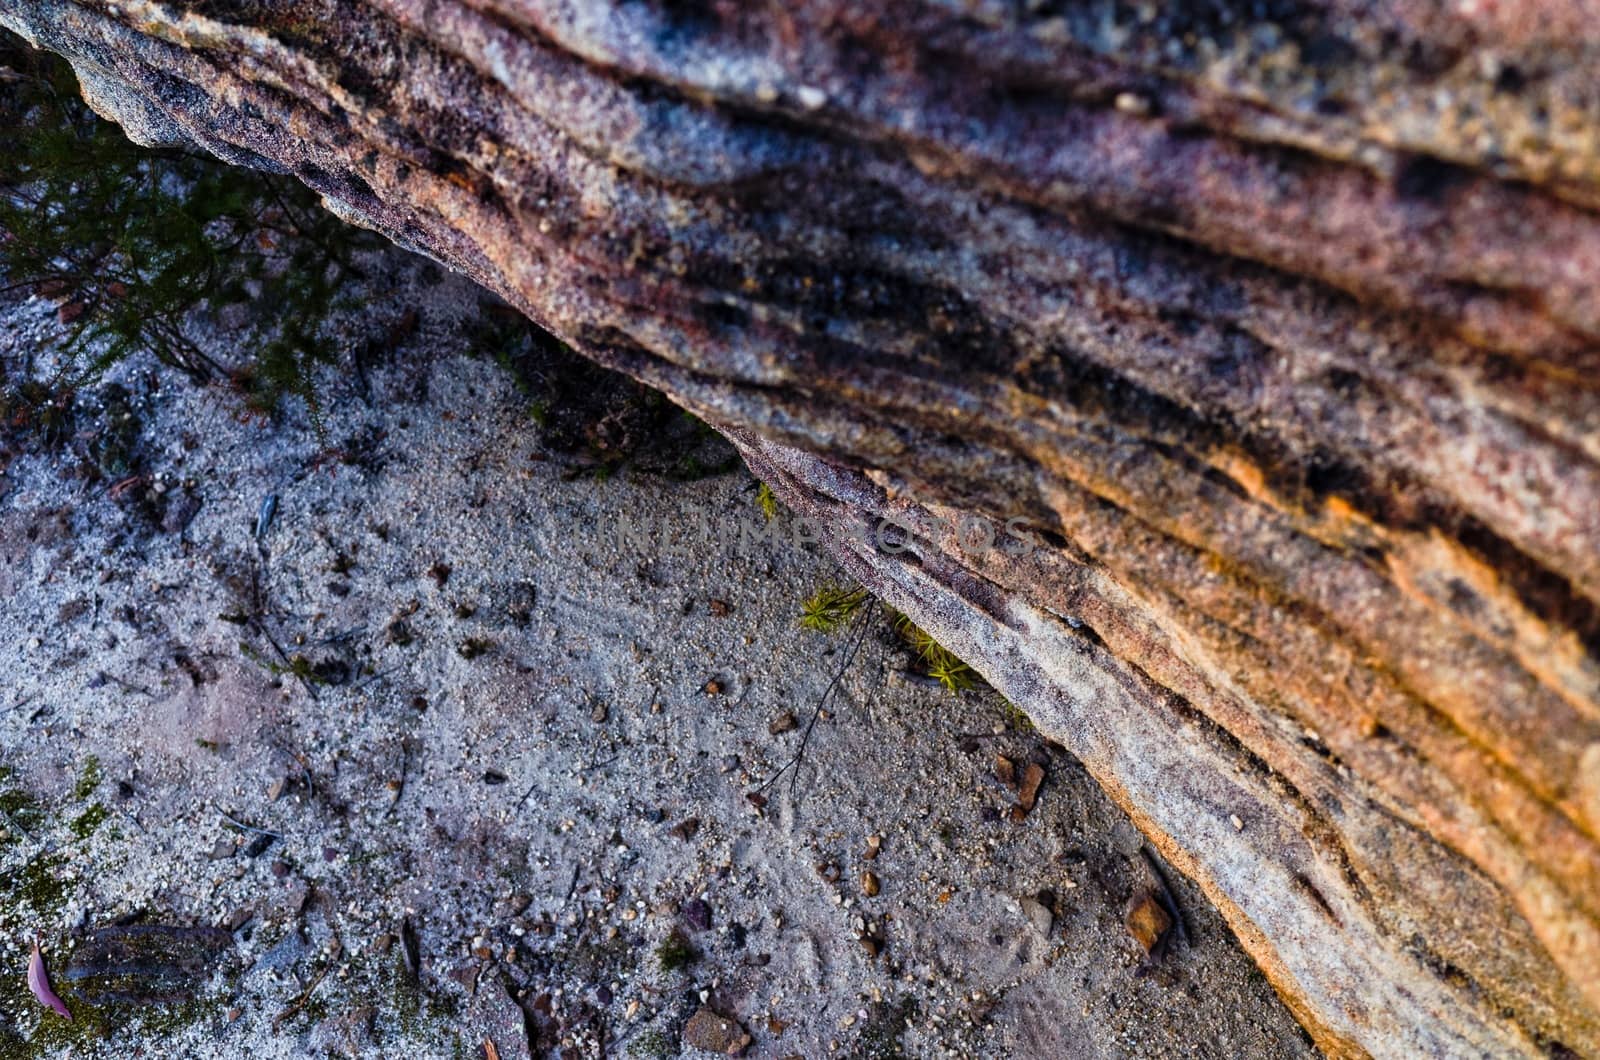 Rock formations in the Australian bush by jaaske